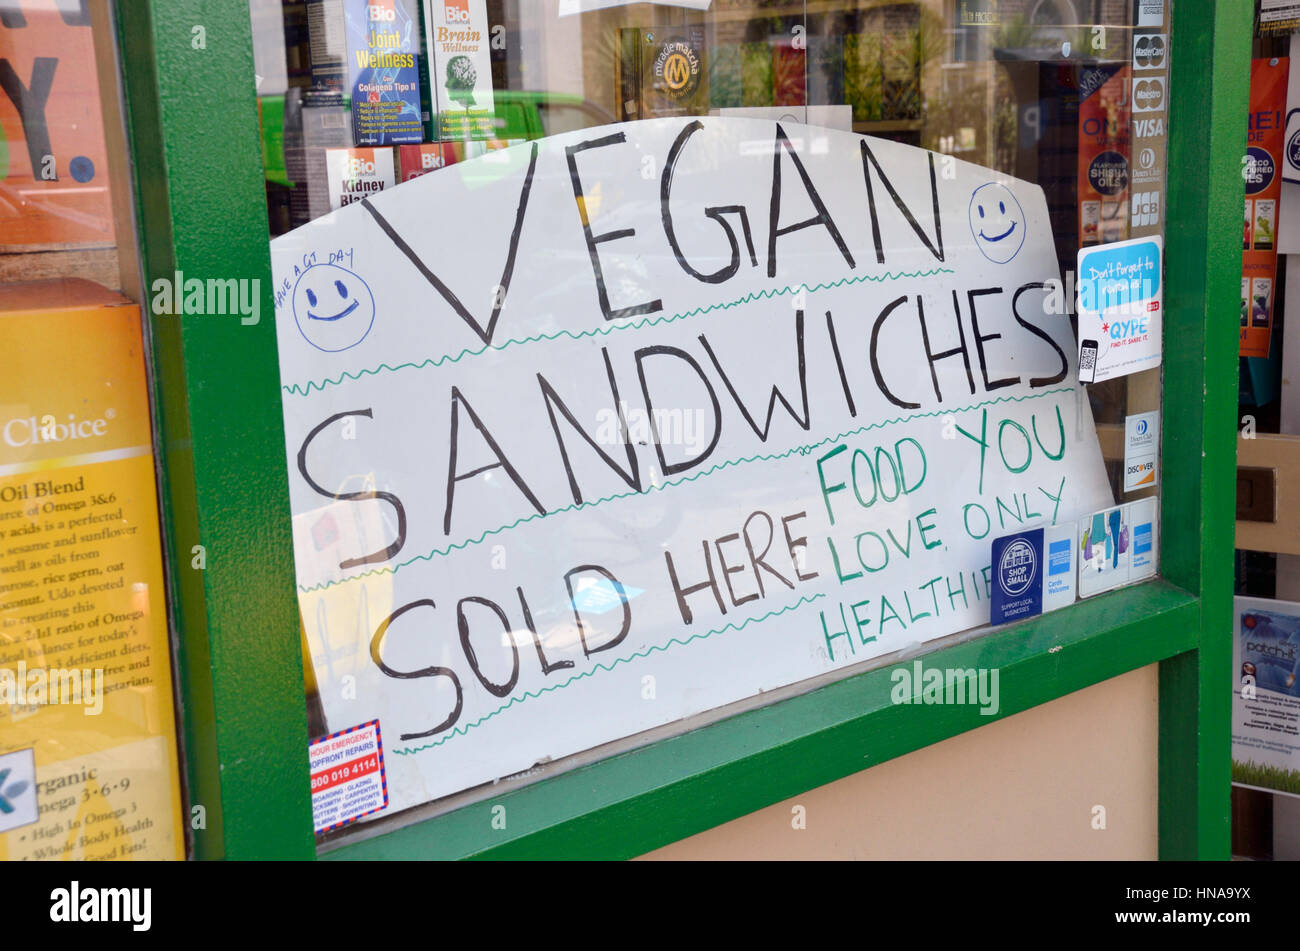 'Vegan sandwichs vendus ici' dans une vitrine Banque D'Images